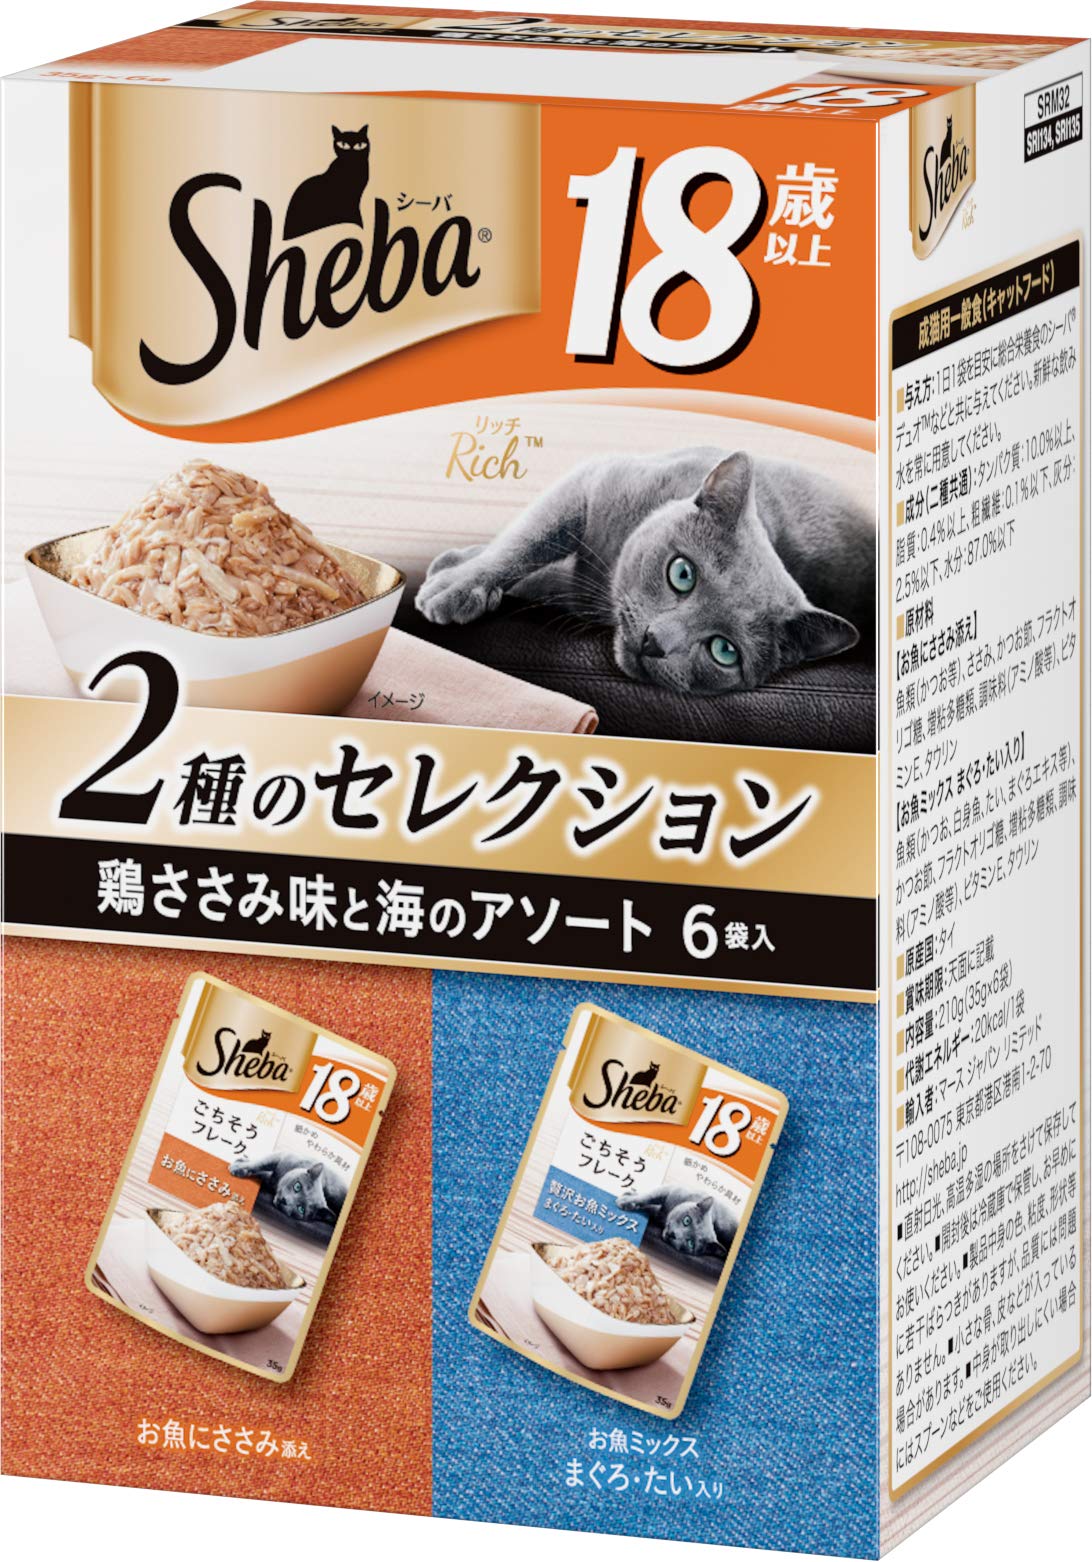 柔らかな質感の Sheba シーバ キャットフード 3 鶏ささみ味と海のアソート ごちそうフレーク リッチ18歳以上 キャットフード -  qualitygb.do